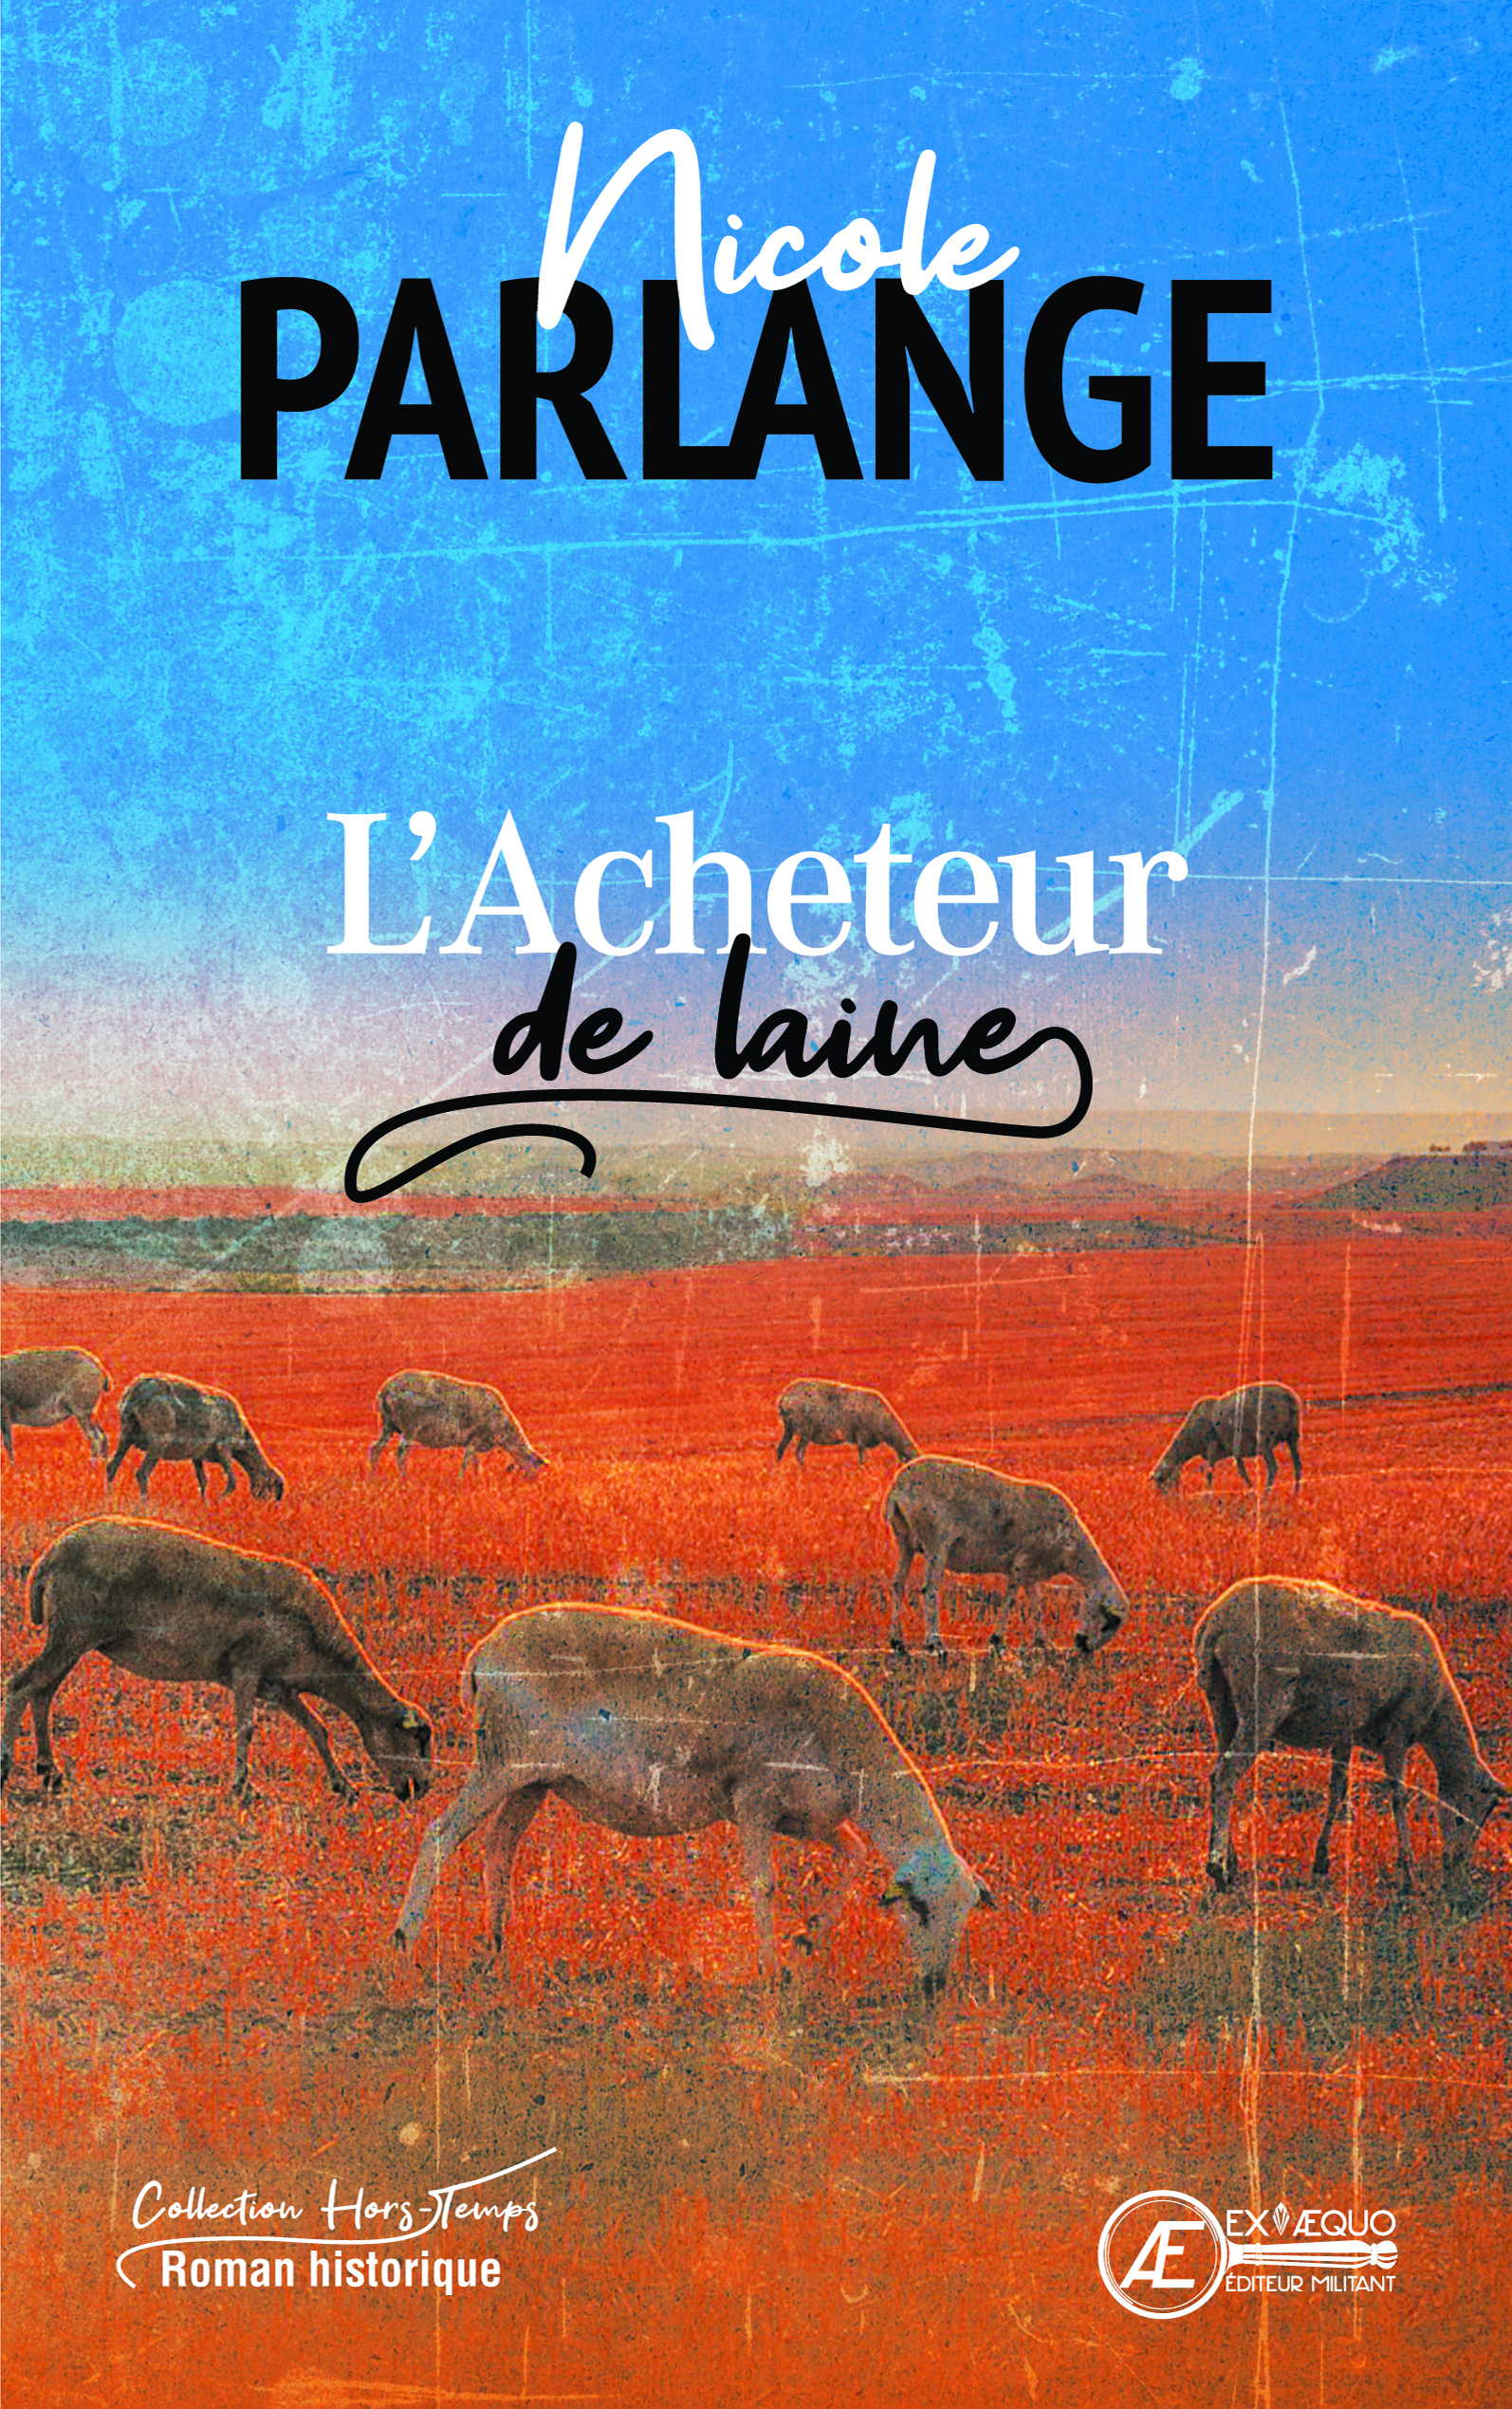 You are currently viewing L’Acheteur de laine, de Nicole Parlange